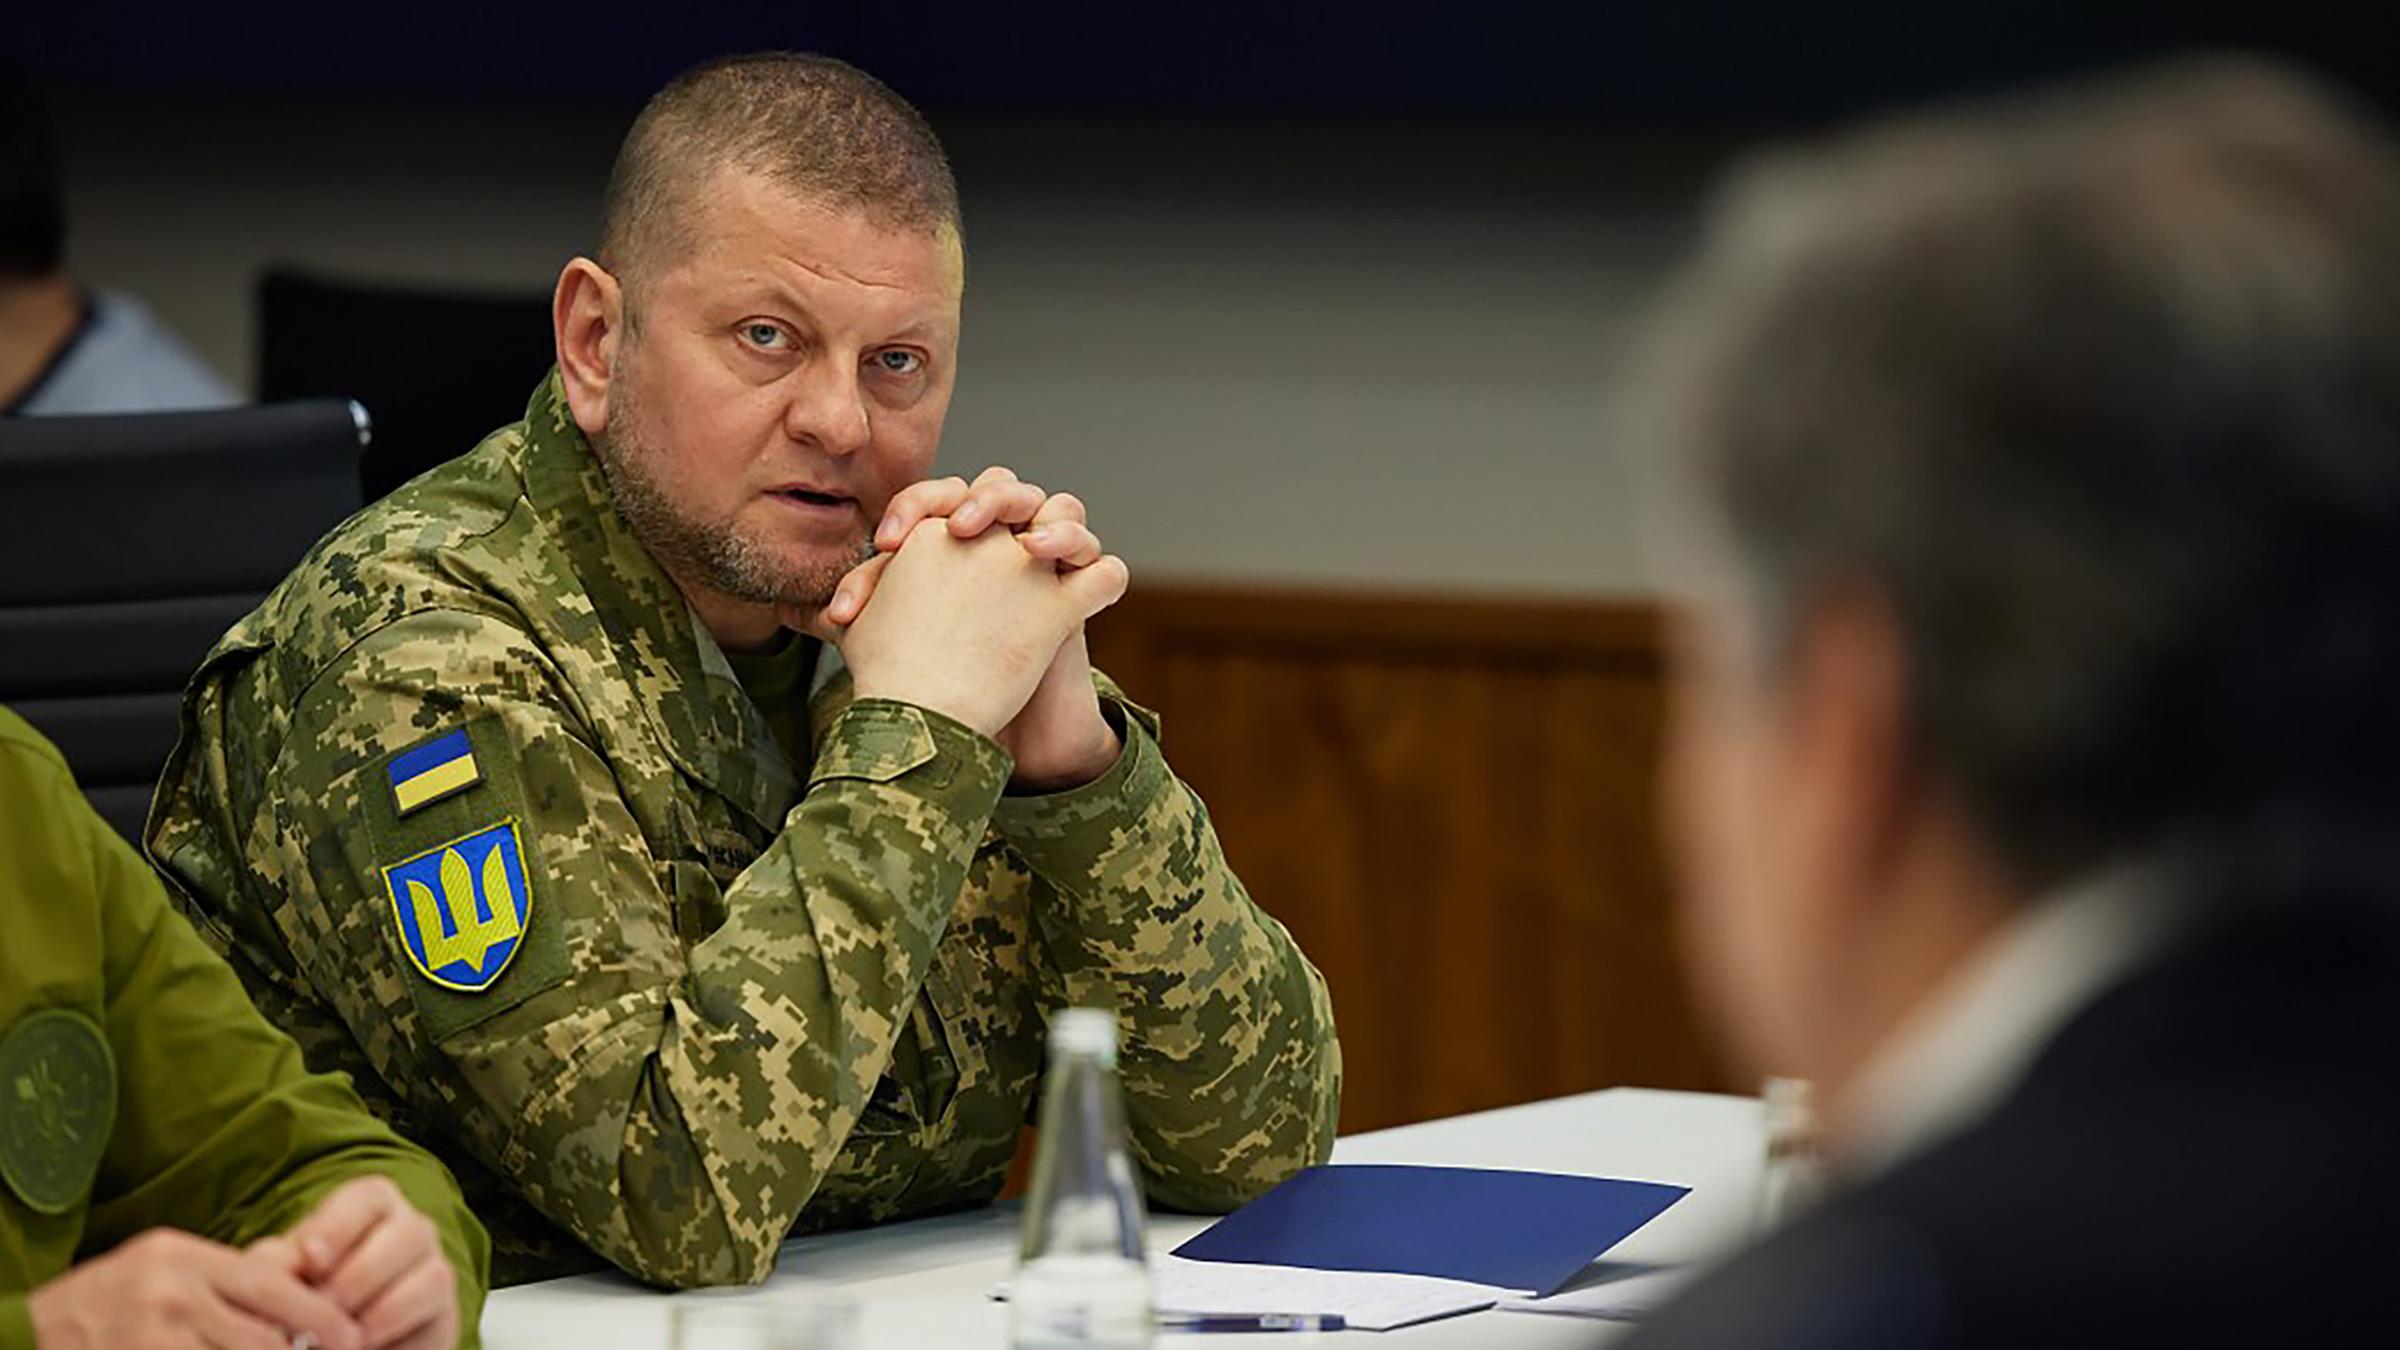 Der Oberkommandierenden der ukrainischen Streitkräfte, Waleryj Saluschnyj, aufgenommen am 25.04.2022 in Kiew